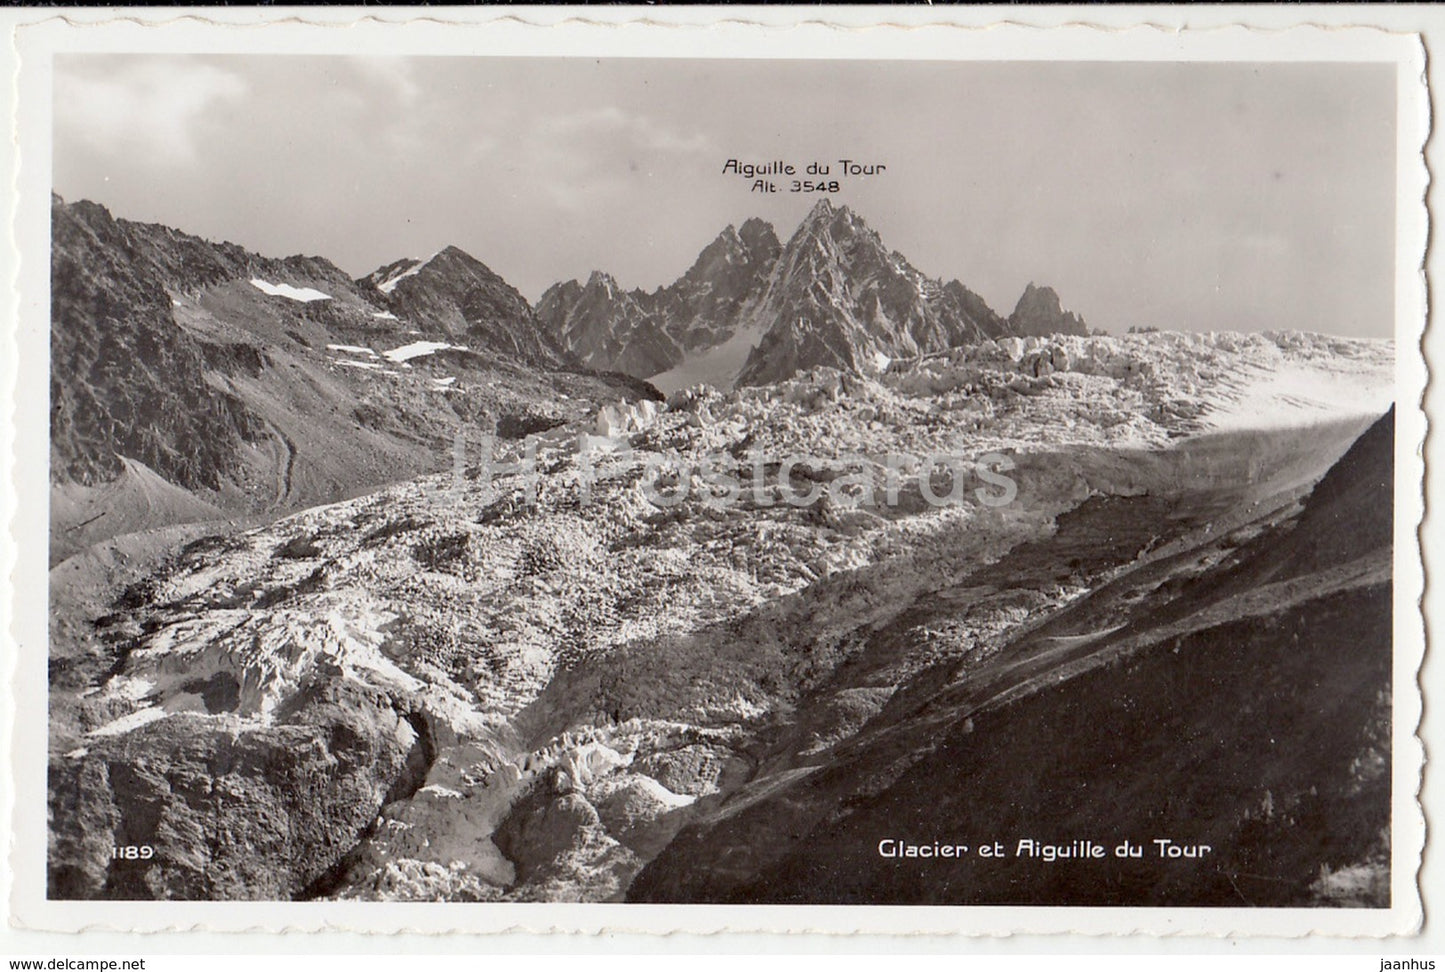 Glacier et Aiguille du Tour - 1189 - Switzerland - 1958 - used - JH Postcards